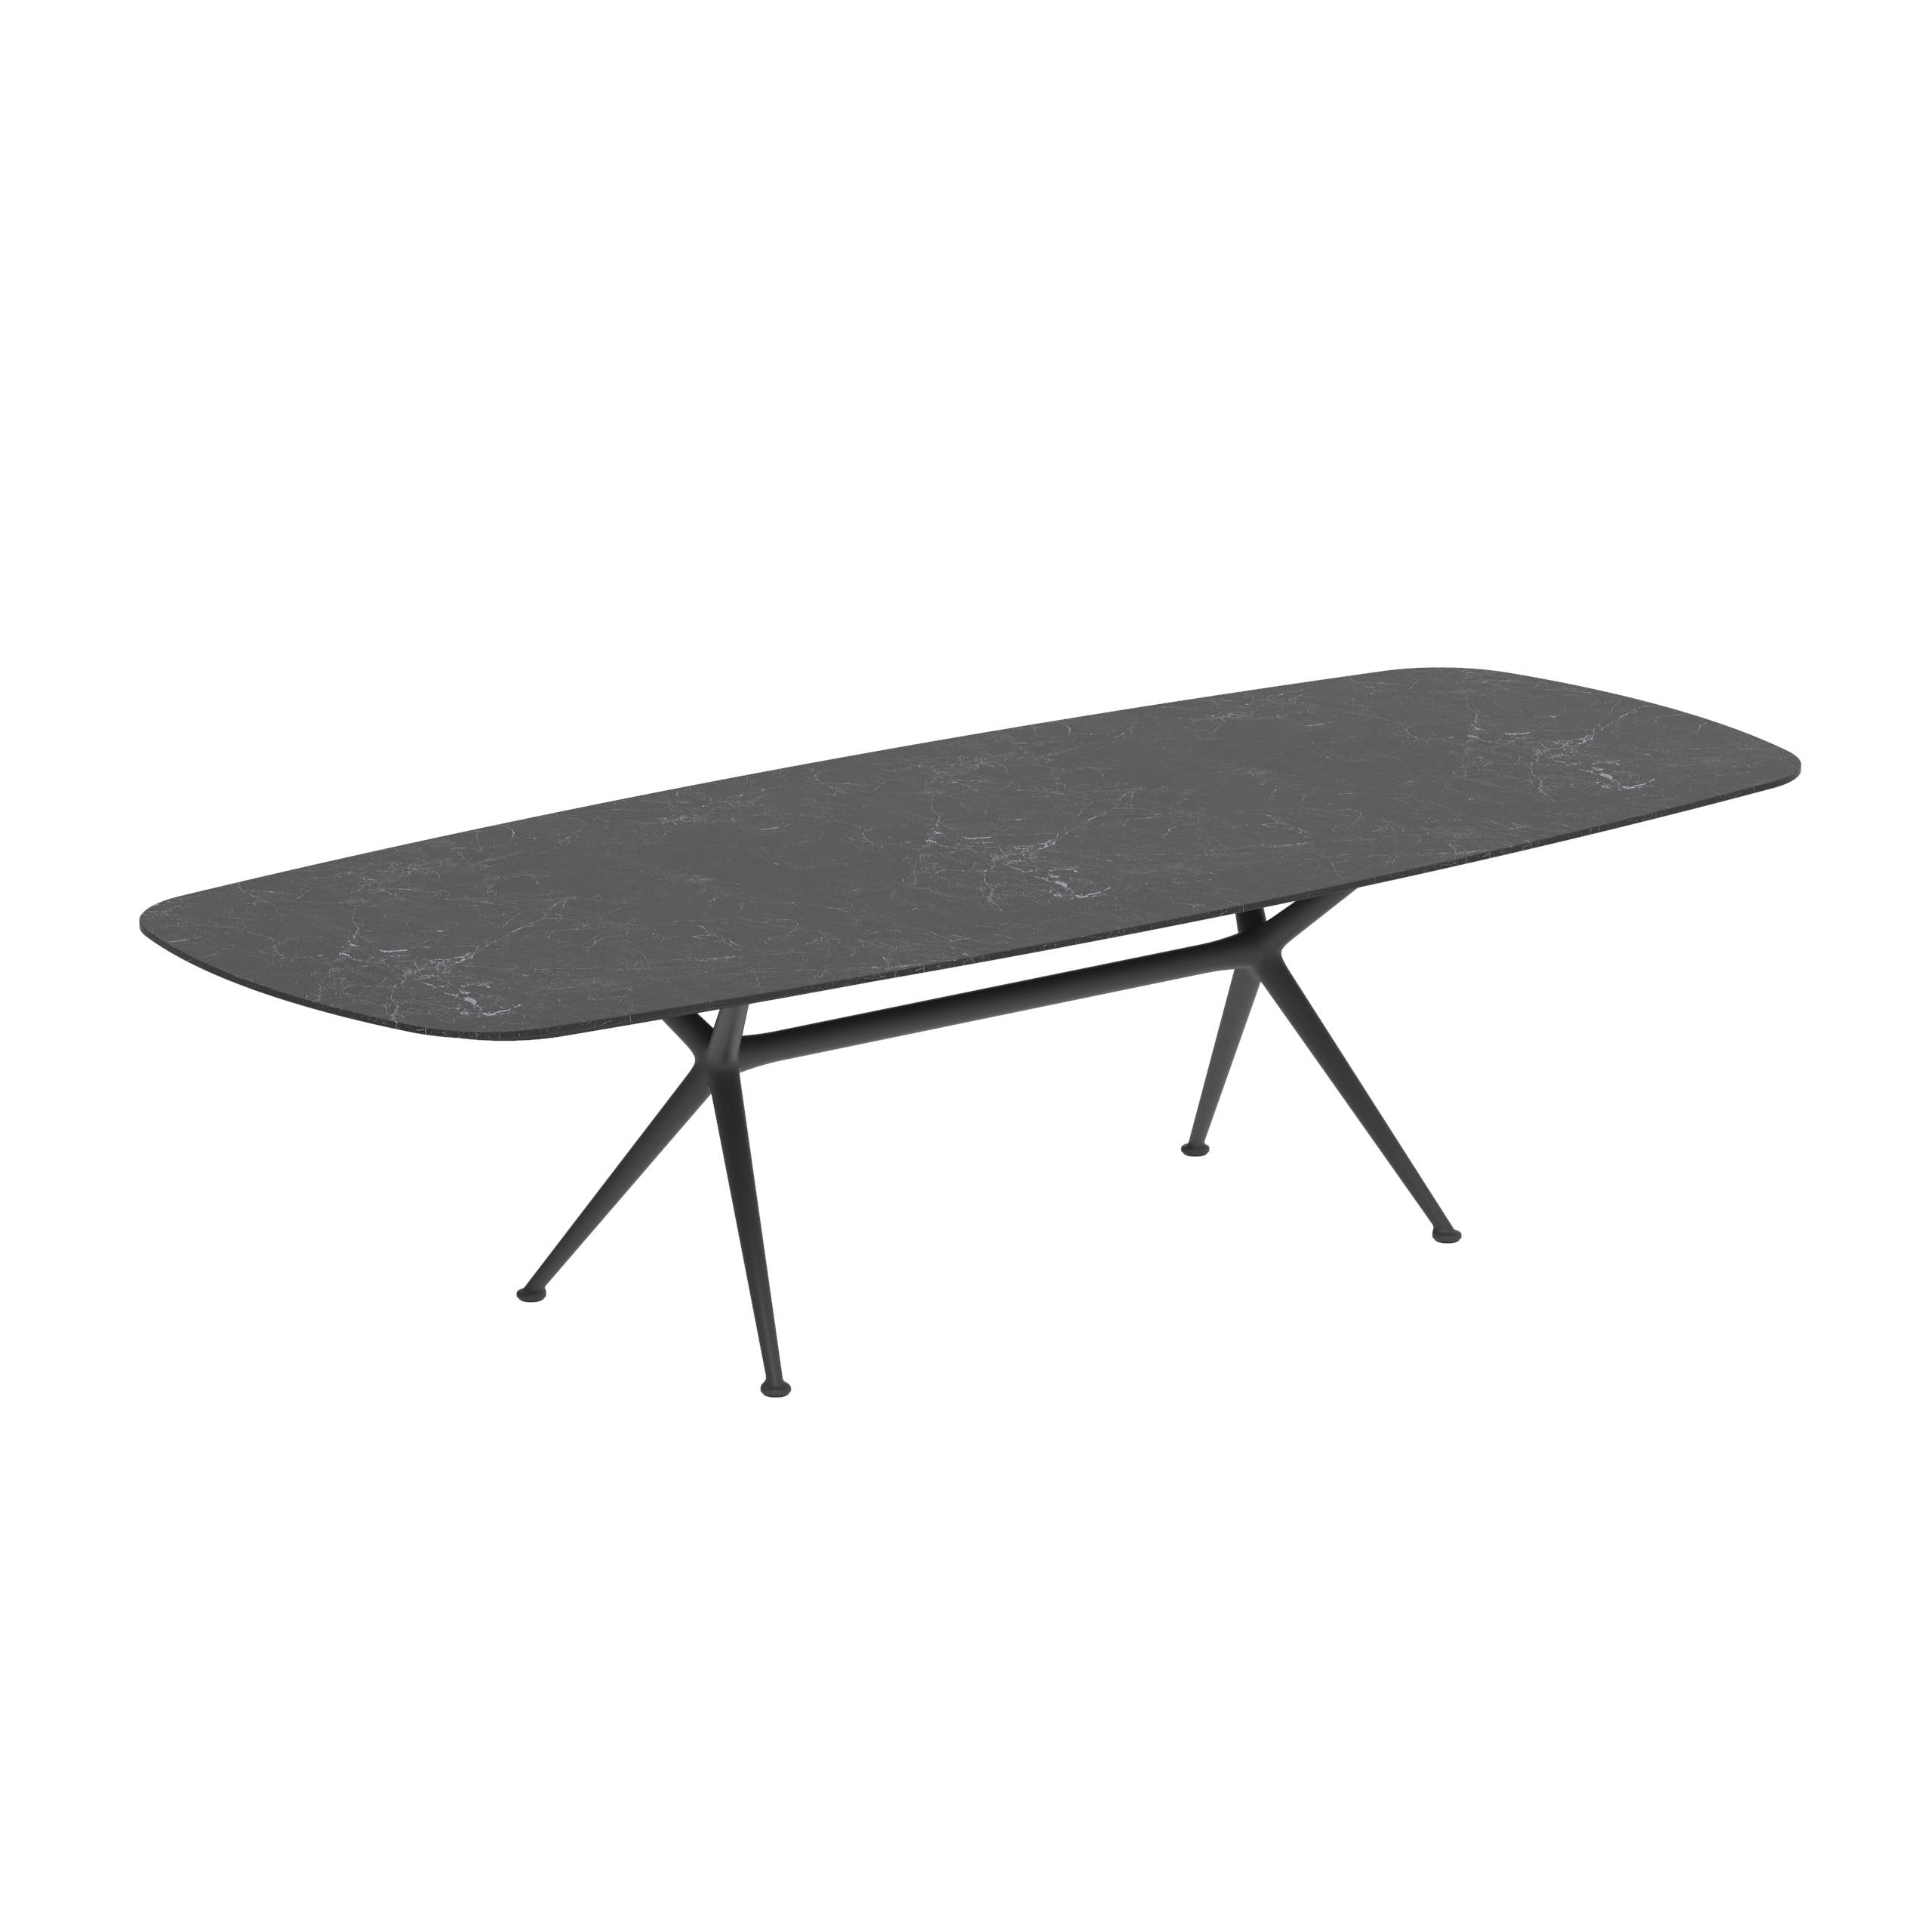 Exes Table 300x120cm Alu Legs Anthracite - Table Top Ceramic Nero Marquina